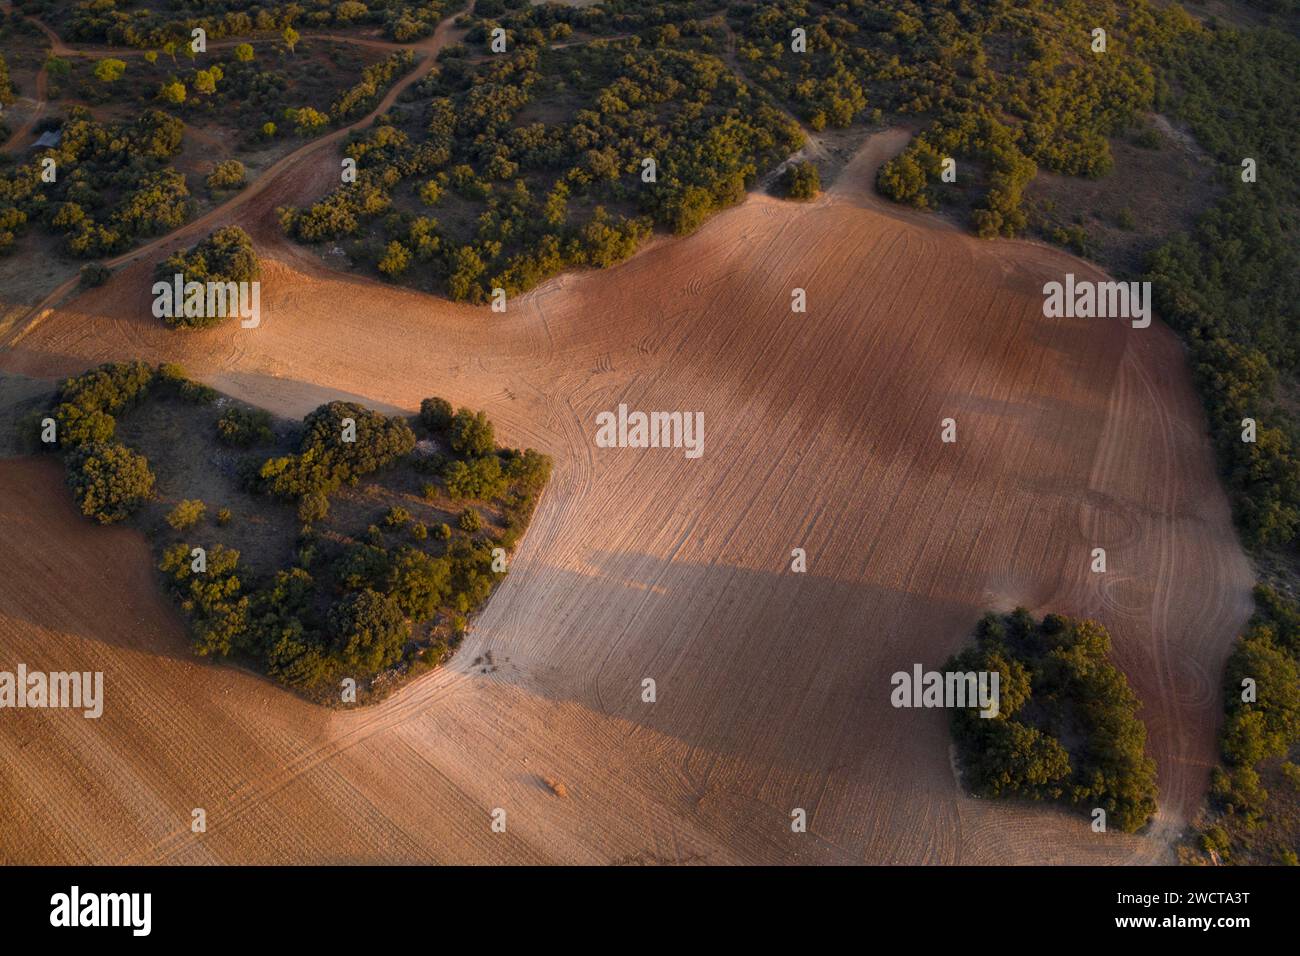 Vista aerea della tenue luce serale che proietta ombre sui campi arati e sugli alberi di Alcarria Foto Stock